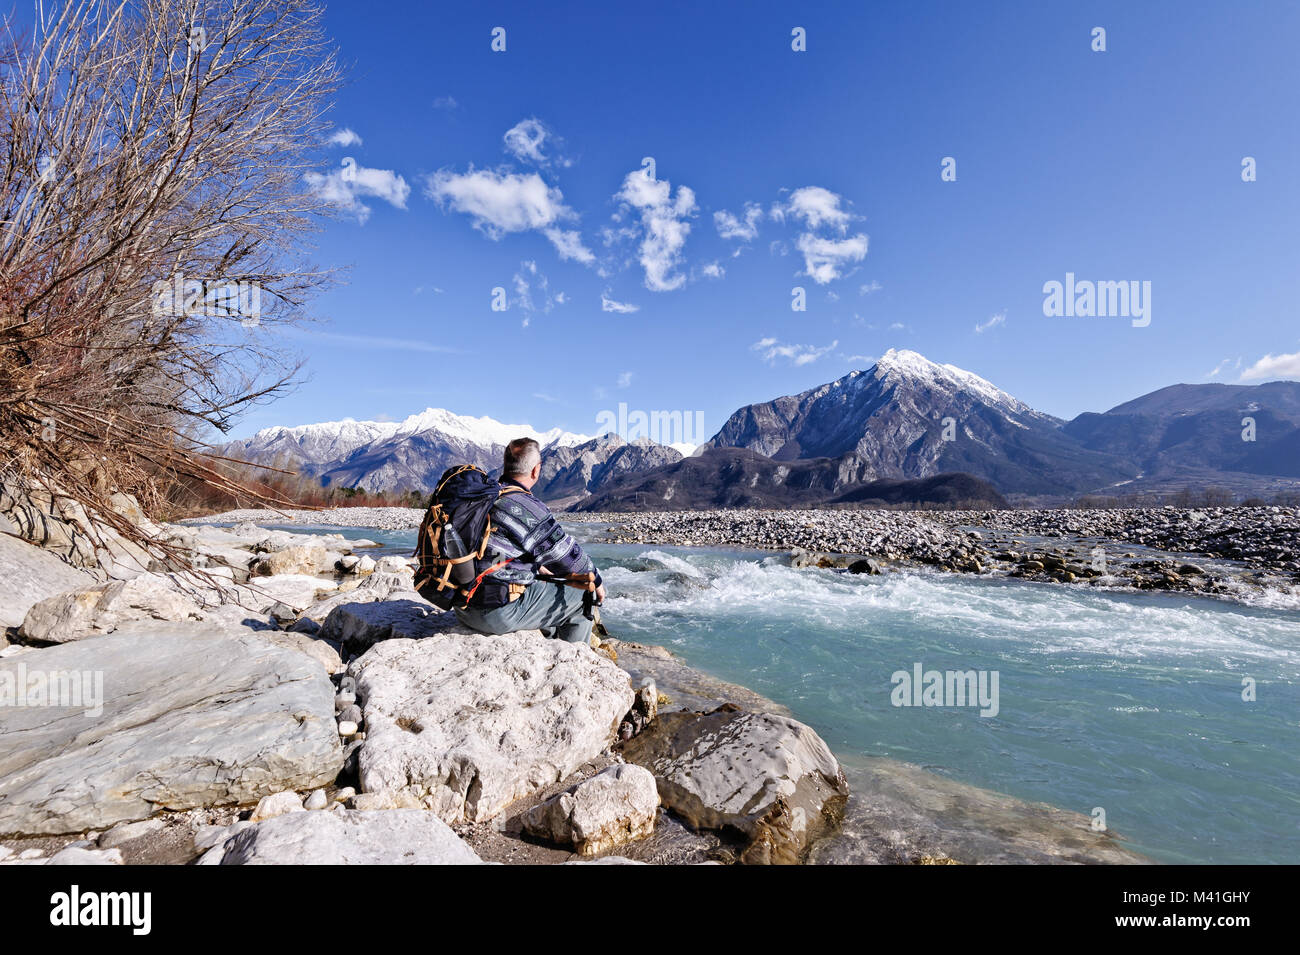 Escursionista seduto sulla riva del fiume sulle rocce, guardando il paesaggio delle montagne.Alpi,l'Italia,Friuli. Foto Stock